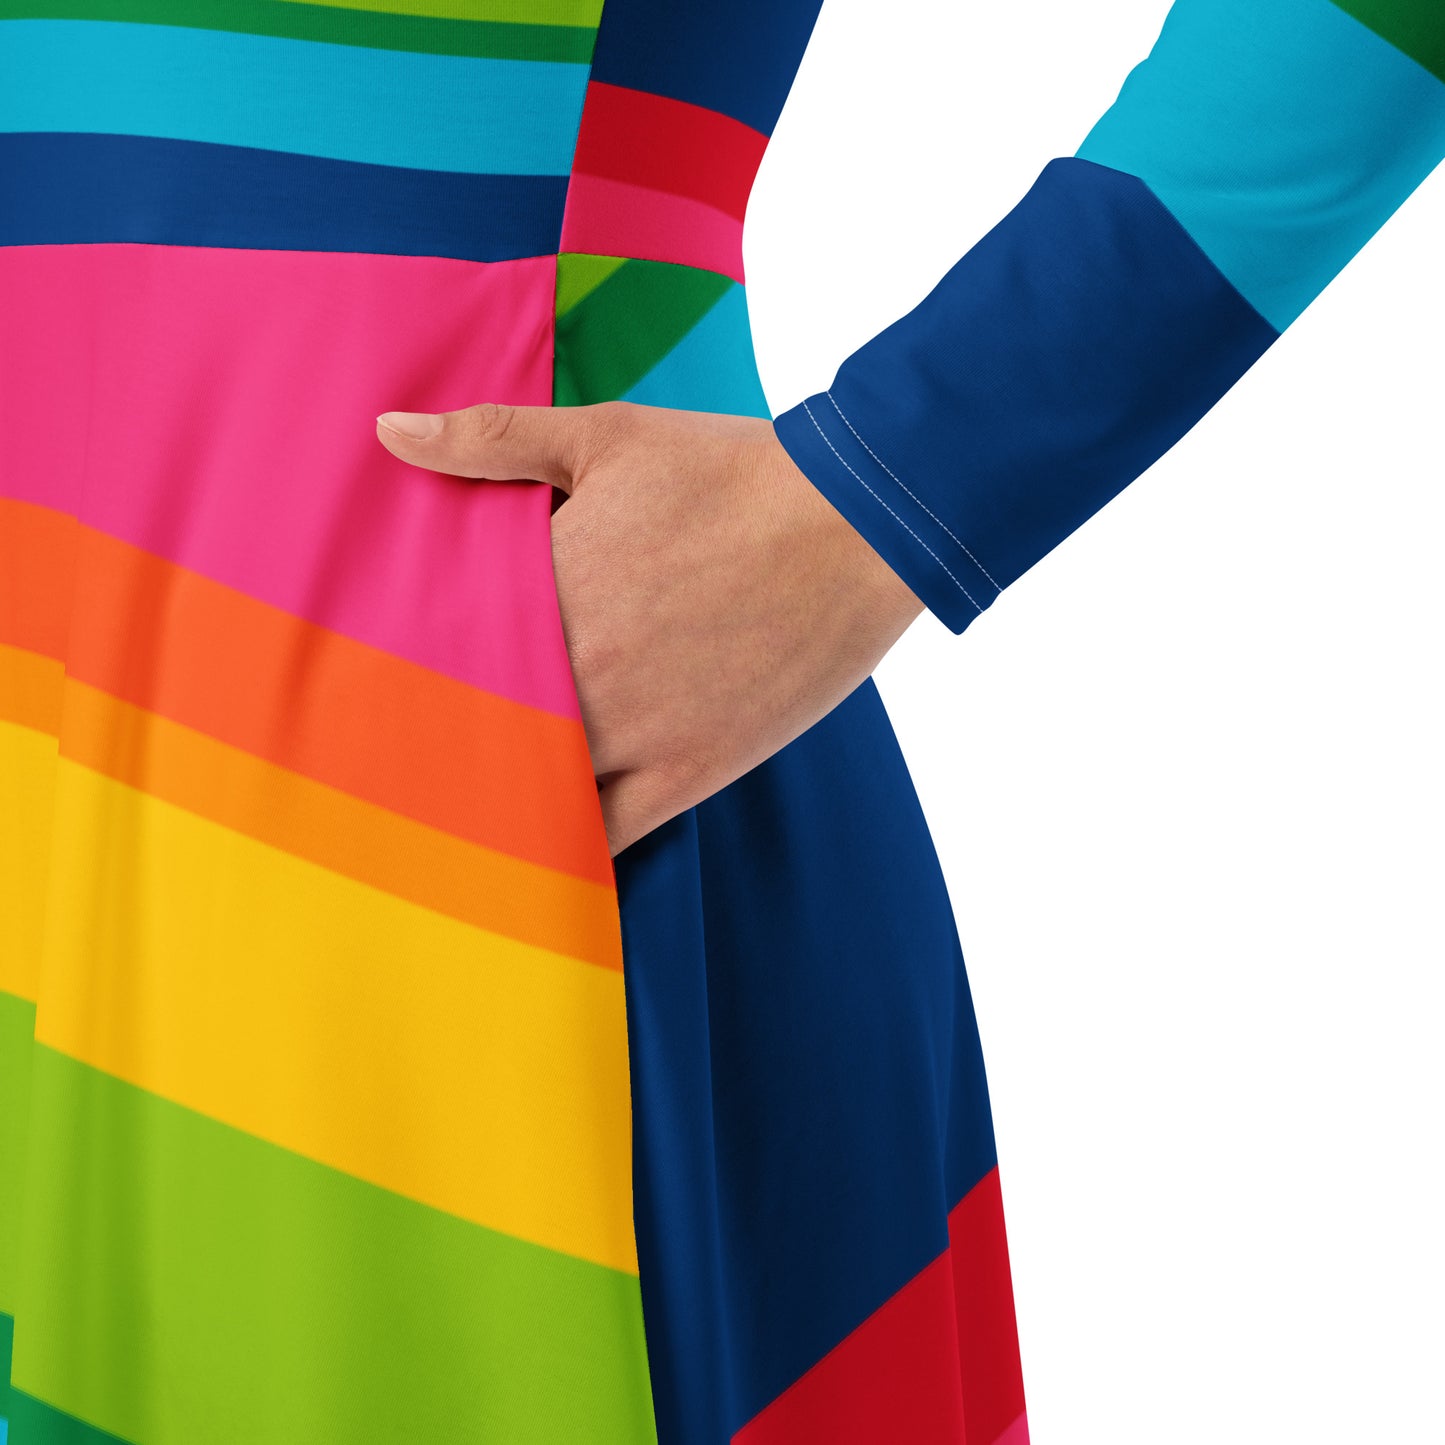 ELLIE rainbow stripe - Pitkähihainen midi-mekko taskuilla